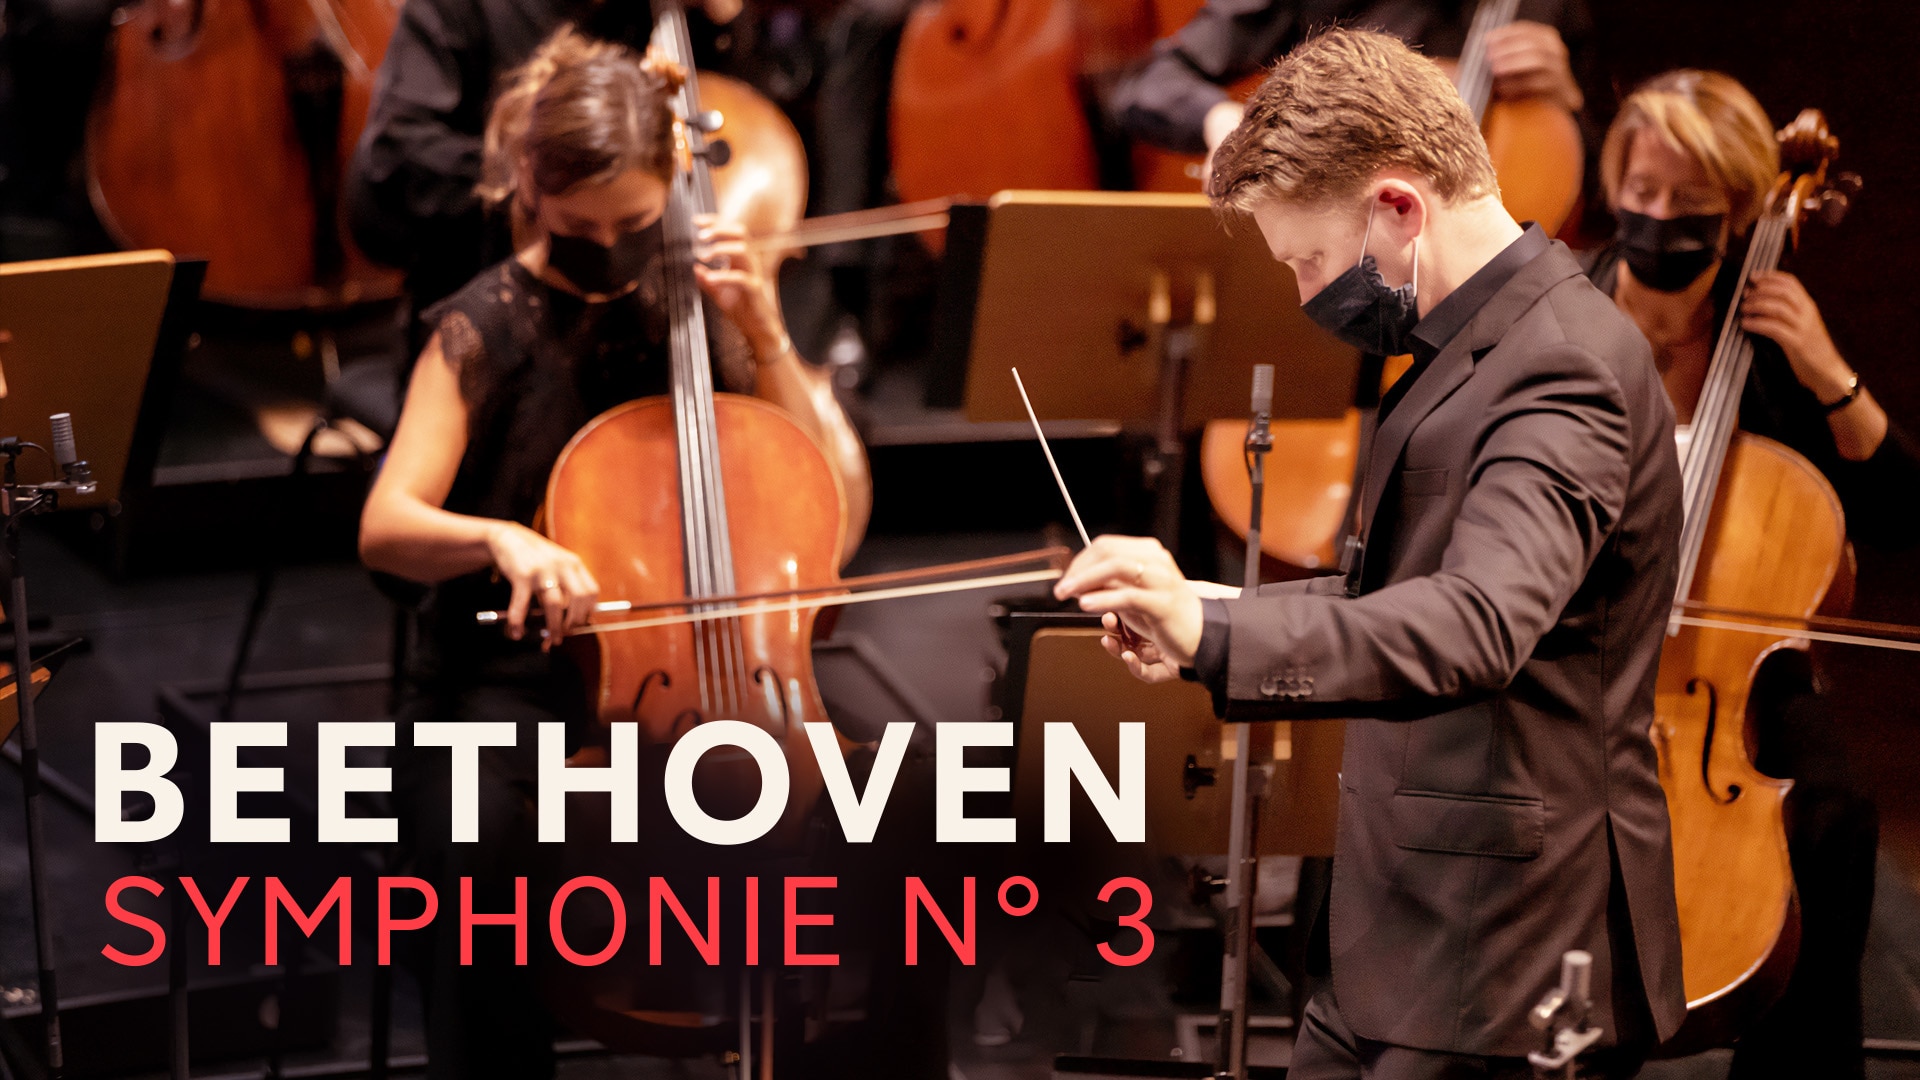 Beethoven - Symphonie n° 3